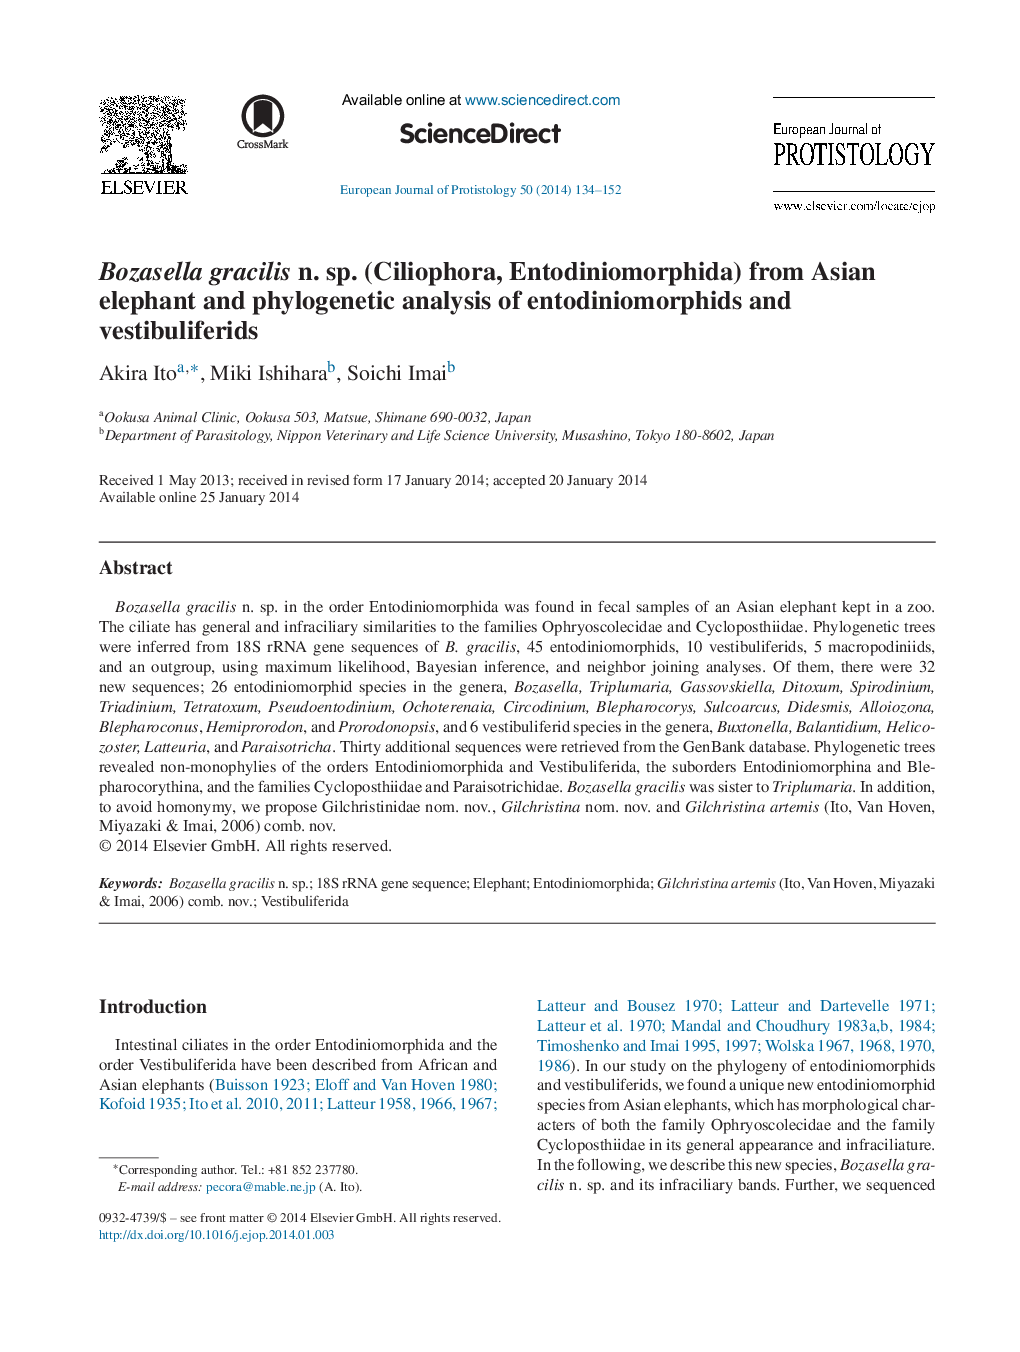 Bozasella gracilis n. sp. (Ciliophora, Entodiniomorphida) from Asian elephant and phylogenetic analysis of entodiniomorphids and vestibuliferids